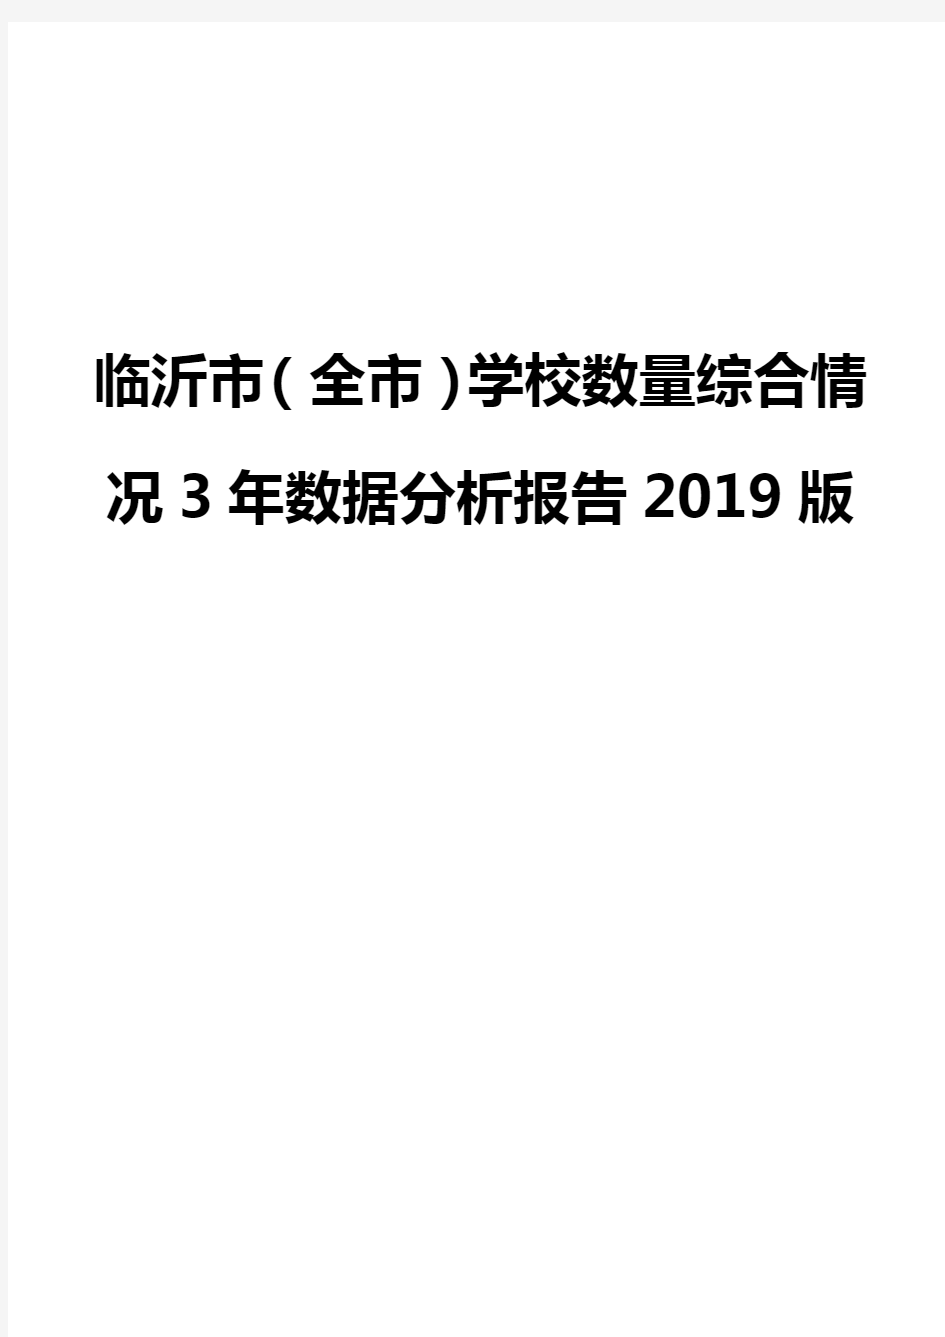 临沂市(全市)学校数量综合情况3年数据分析报告2019版